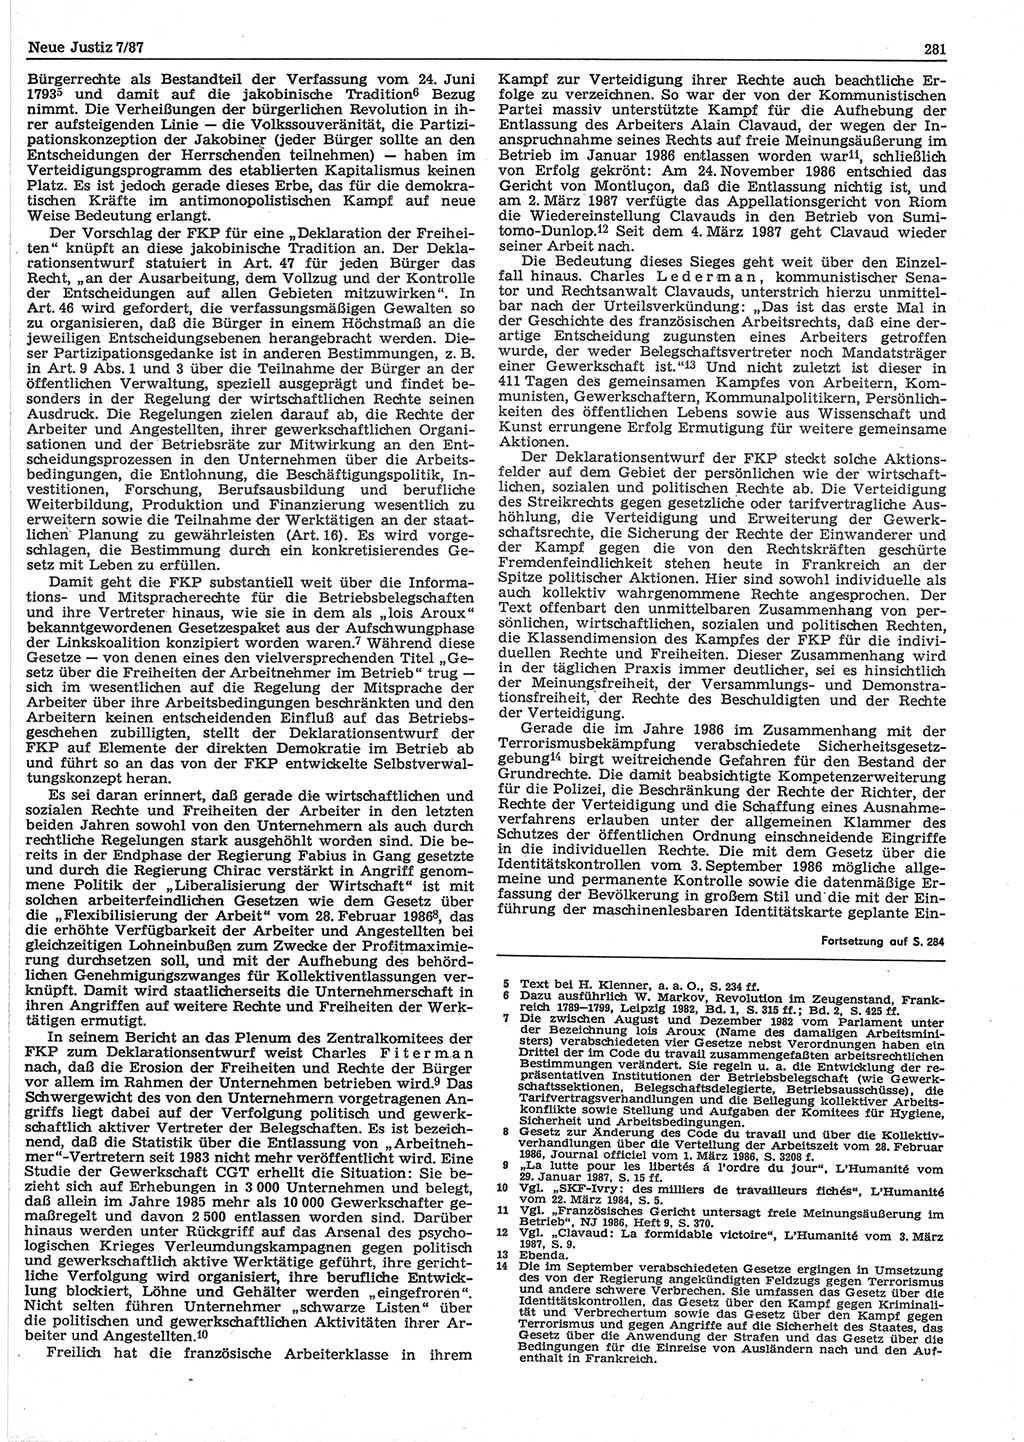 Neue Justiz (NJ), Zeitschrift für sozialistisches Recht und Gesetzlichkeit [Deutsche Demokratische Republik (DDR)], 41. Jahrgang 1987, Seite 281 (NJ DDR 1987, S. 281)